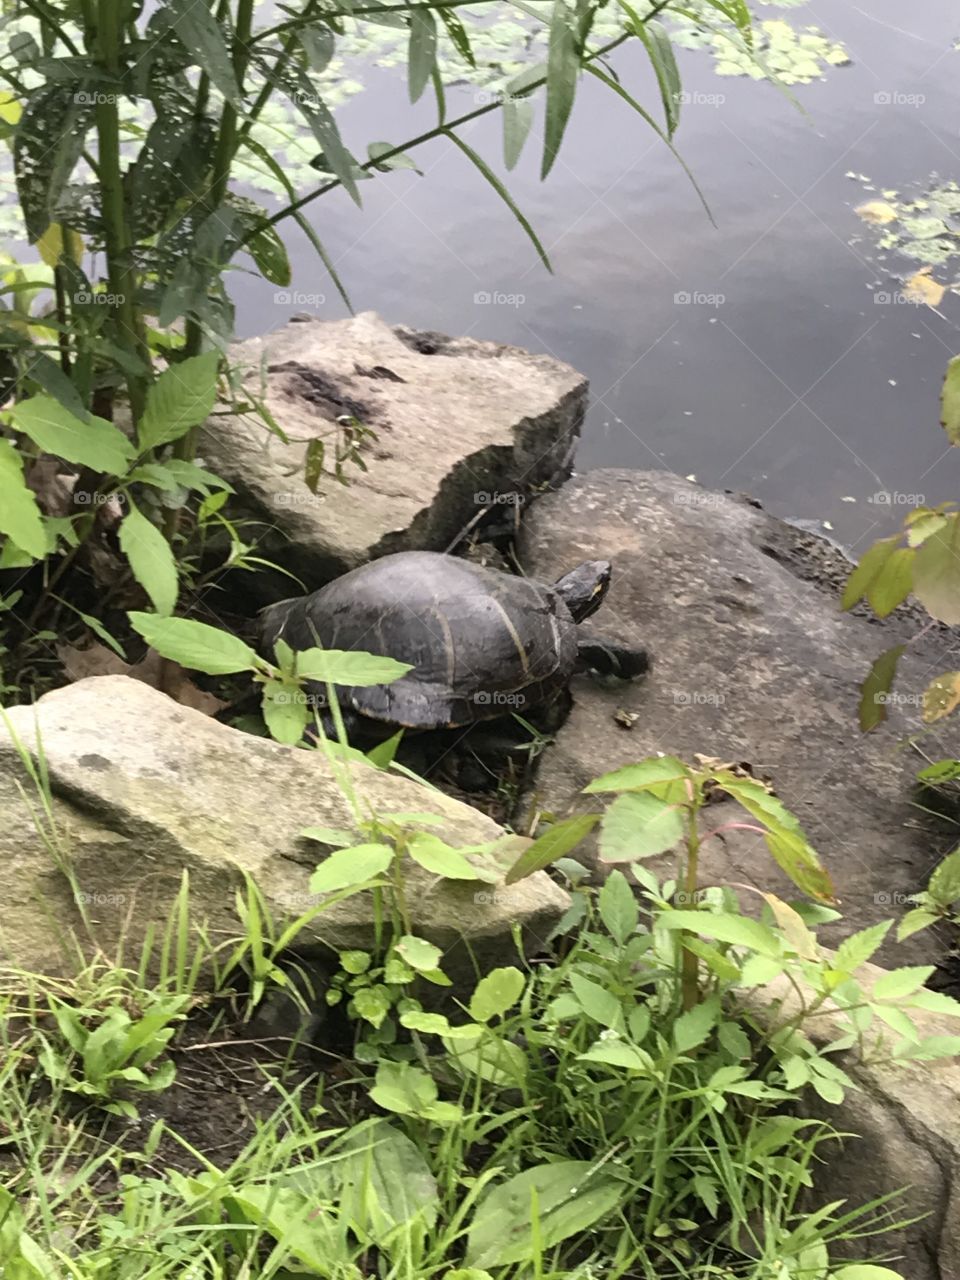 Little turtle friend 